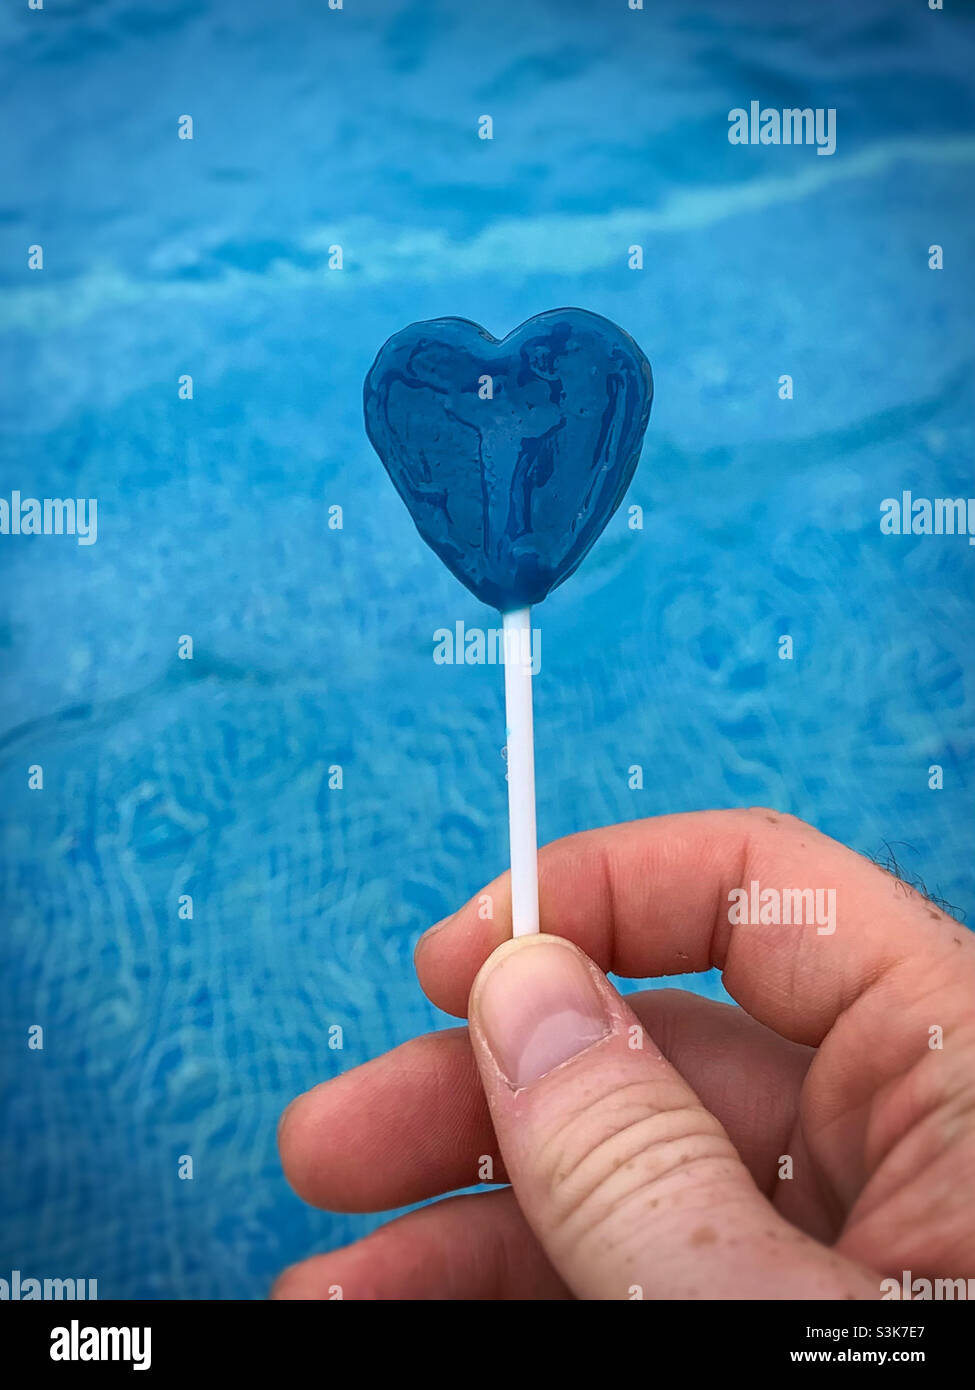 Bleu amour coeur lollipop contre un fond bleu de piscine.Cassé.Désir.Romance Banque D'Images